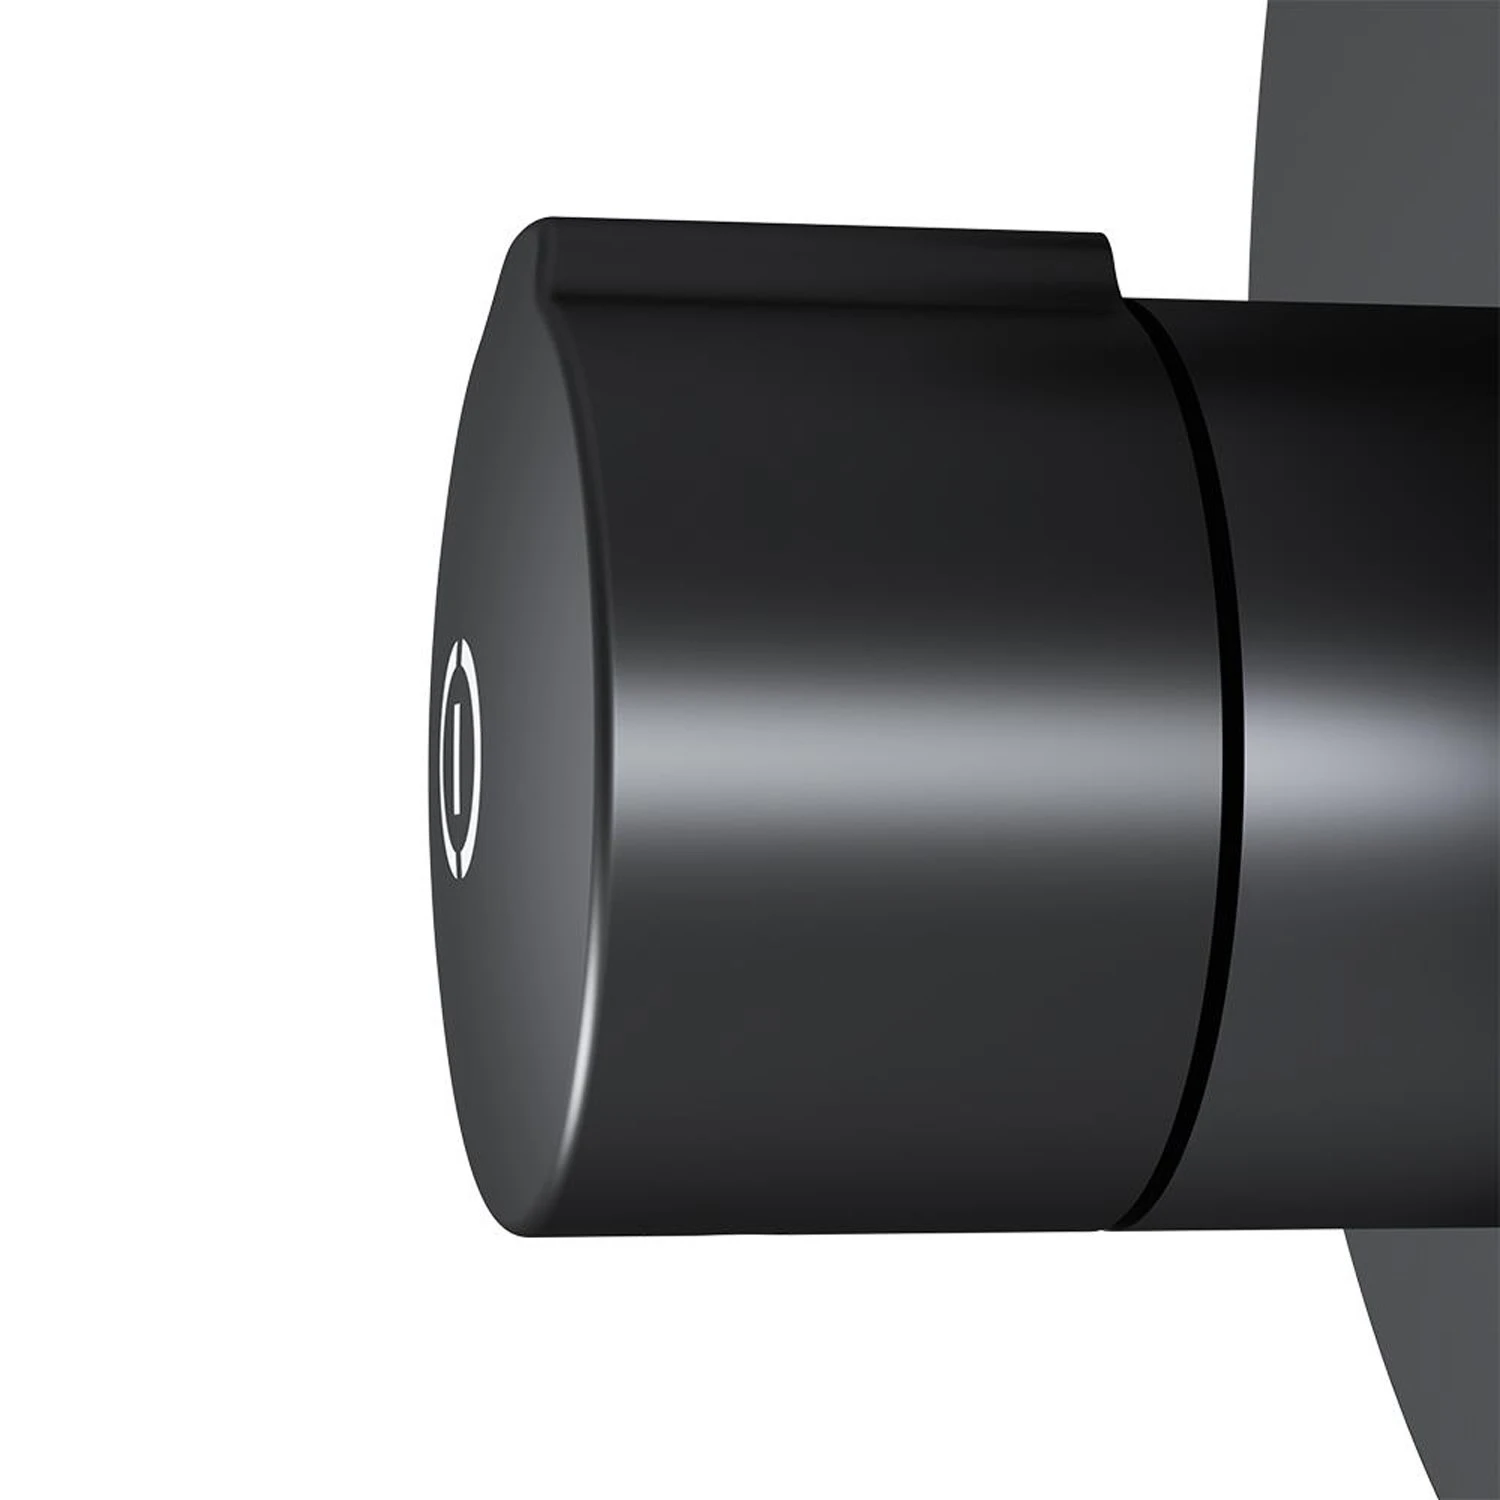 Смеситель AM.PM X-Joy F85A45722 TouchReel для ванны с душем, встраиваемый, цвет черный